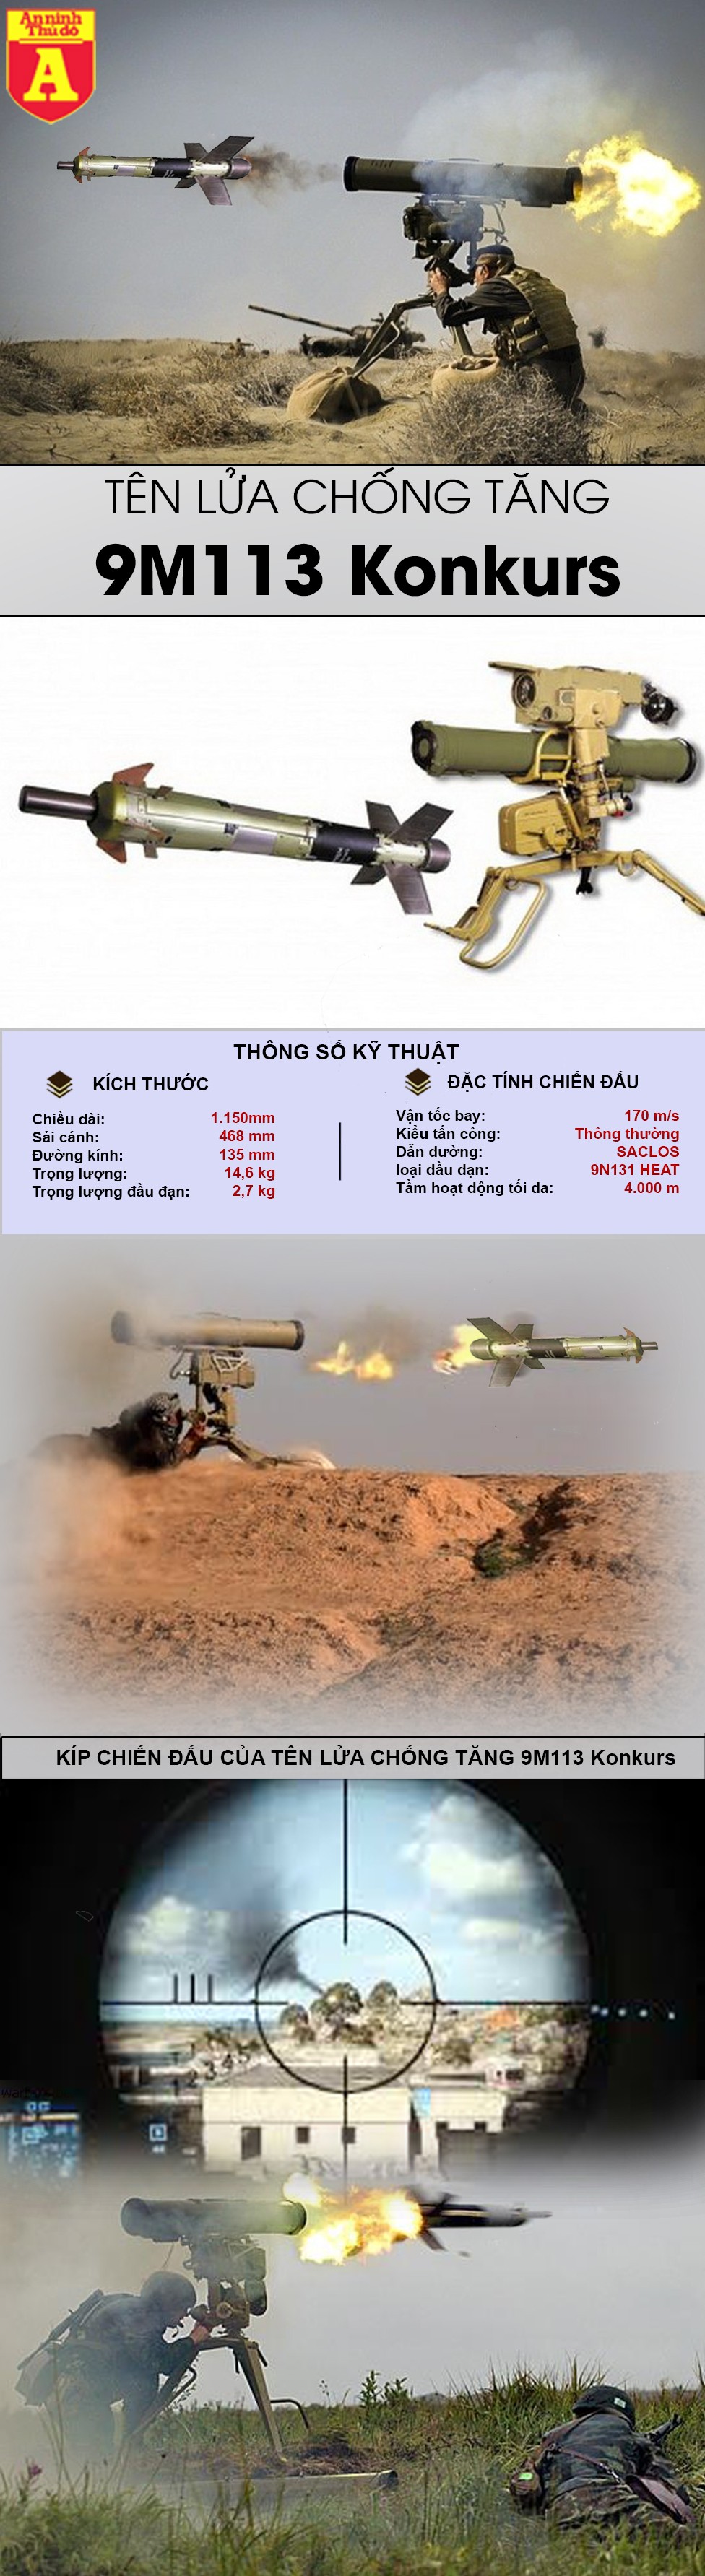 [Infographic] Huyền thoại diệt tăng của Liên Xô trong tay IS vừa xé nát đội hình quân đội Syria ảnh 4